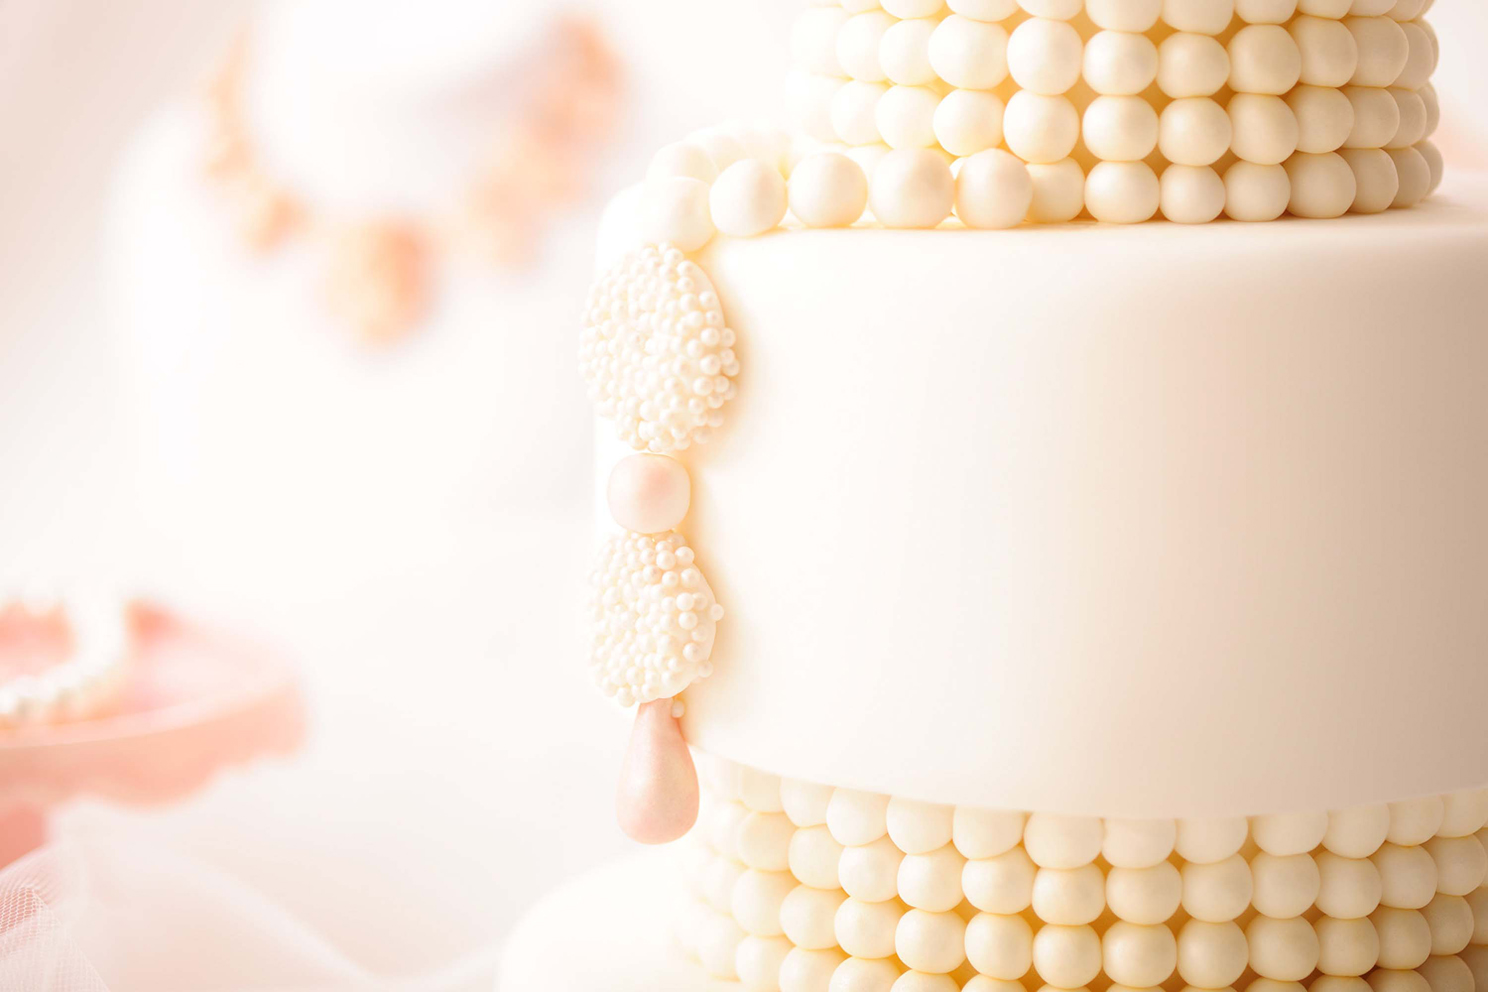 055-Wedding Cakes, di Letizia Grella